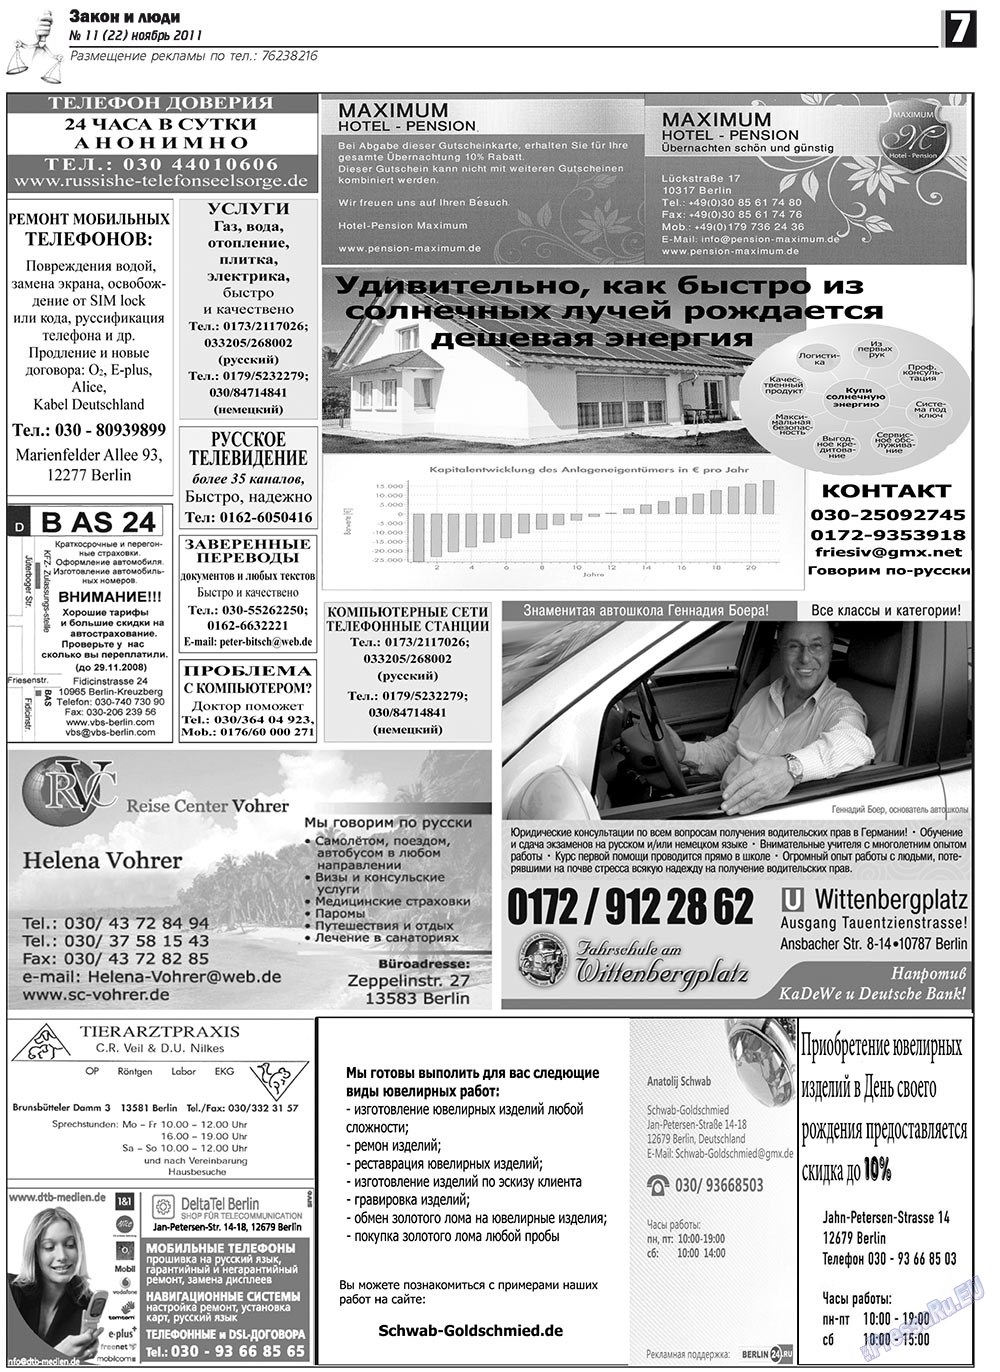 Закон и люди, газета. 2011 №11 стр.7